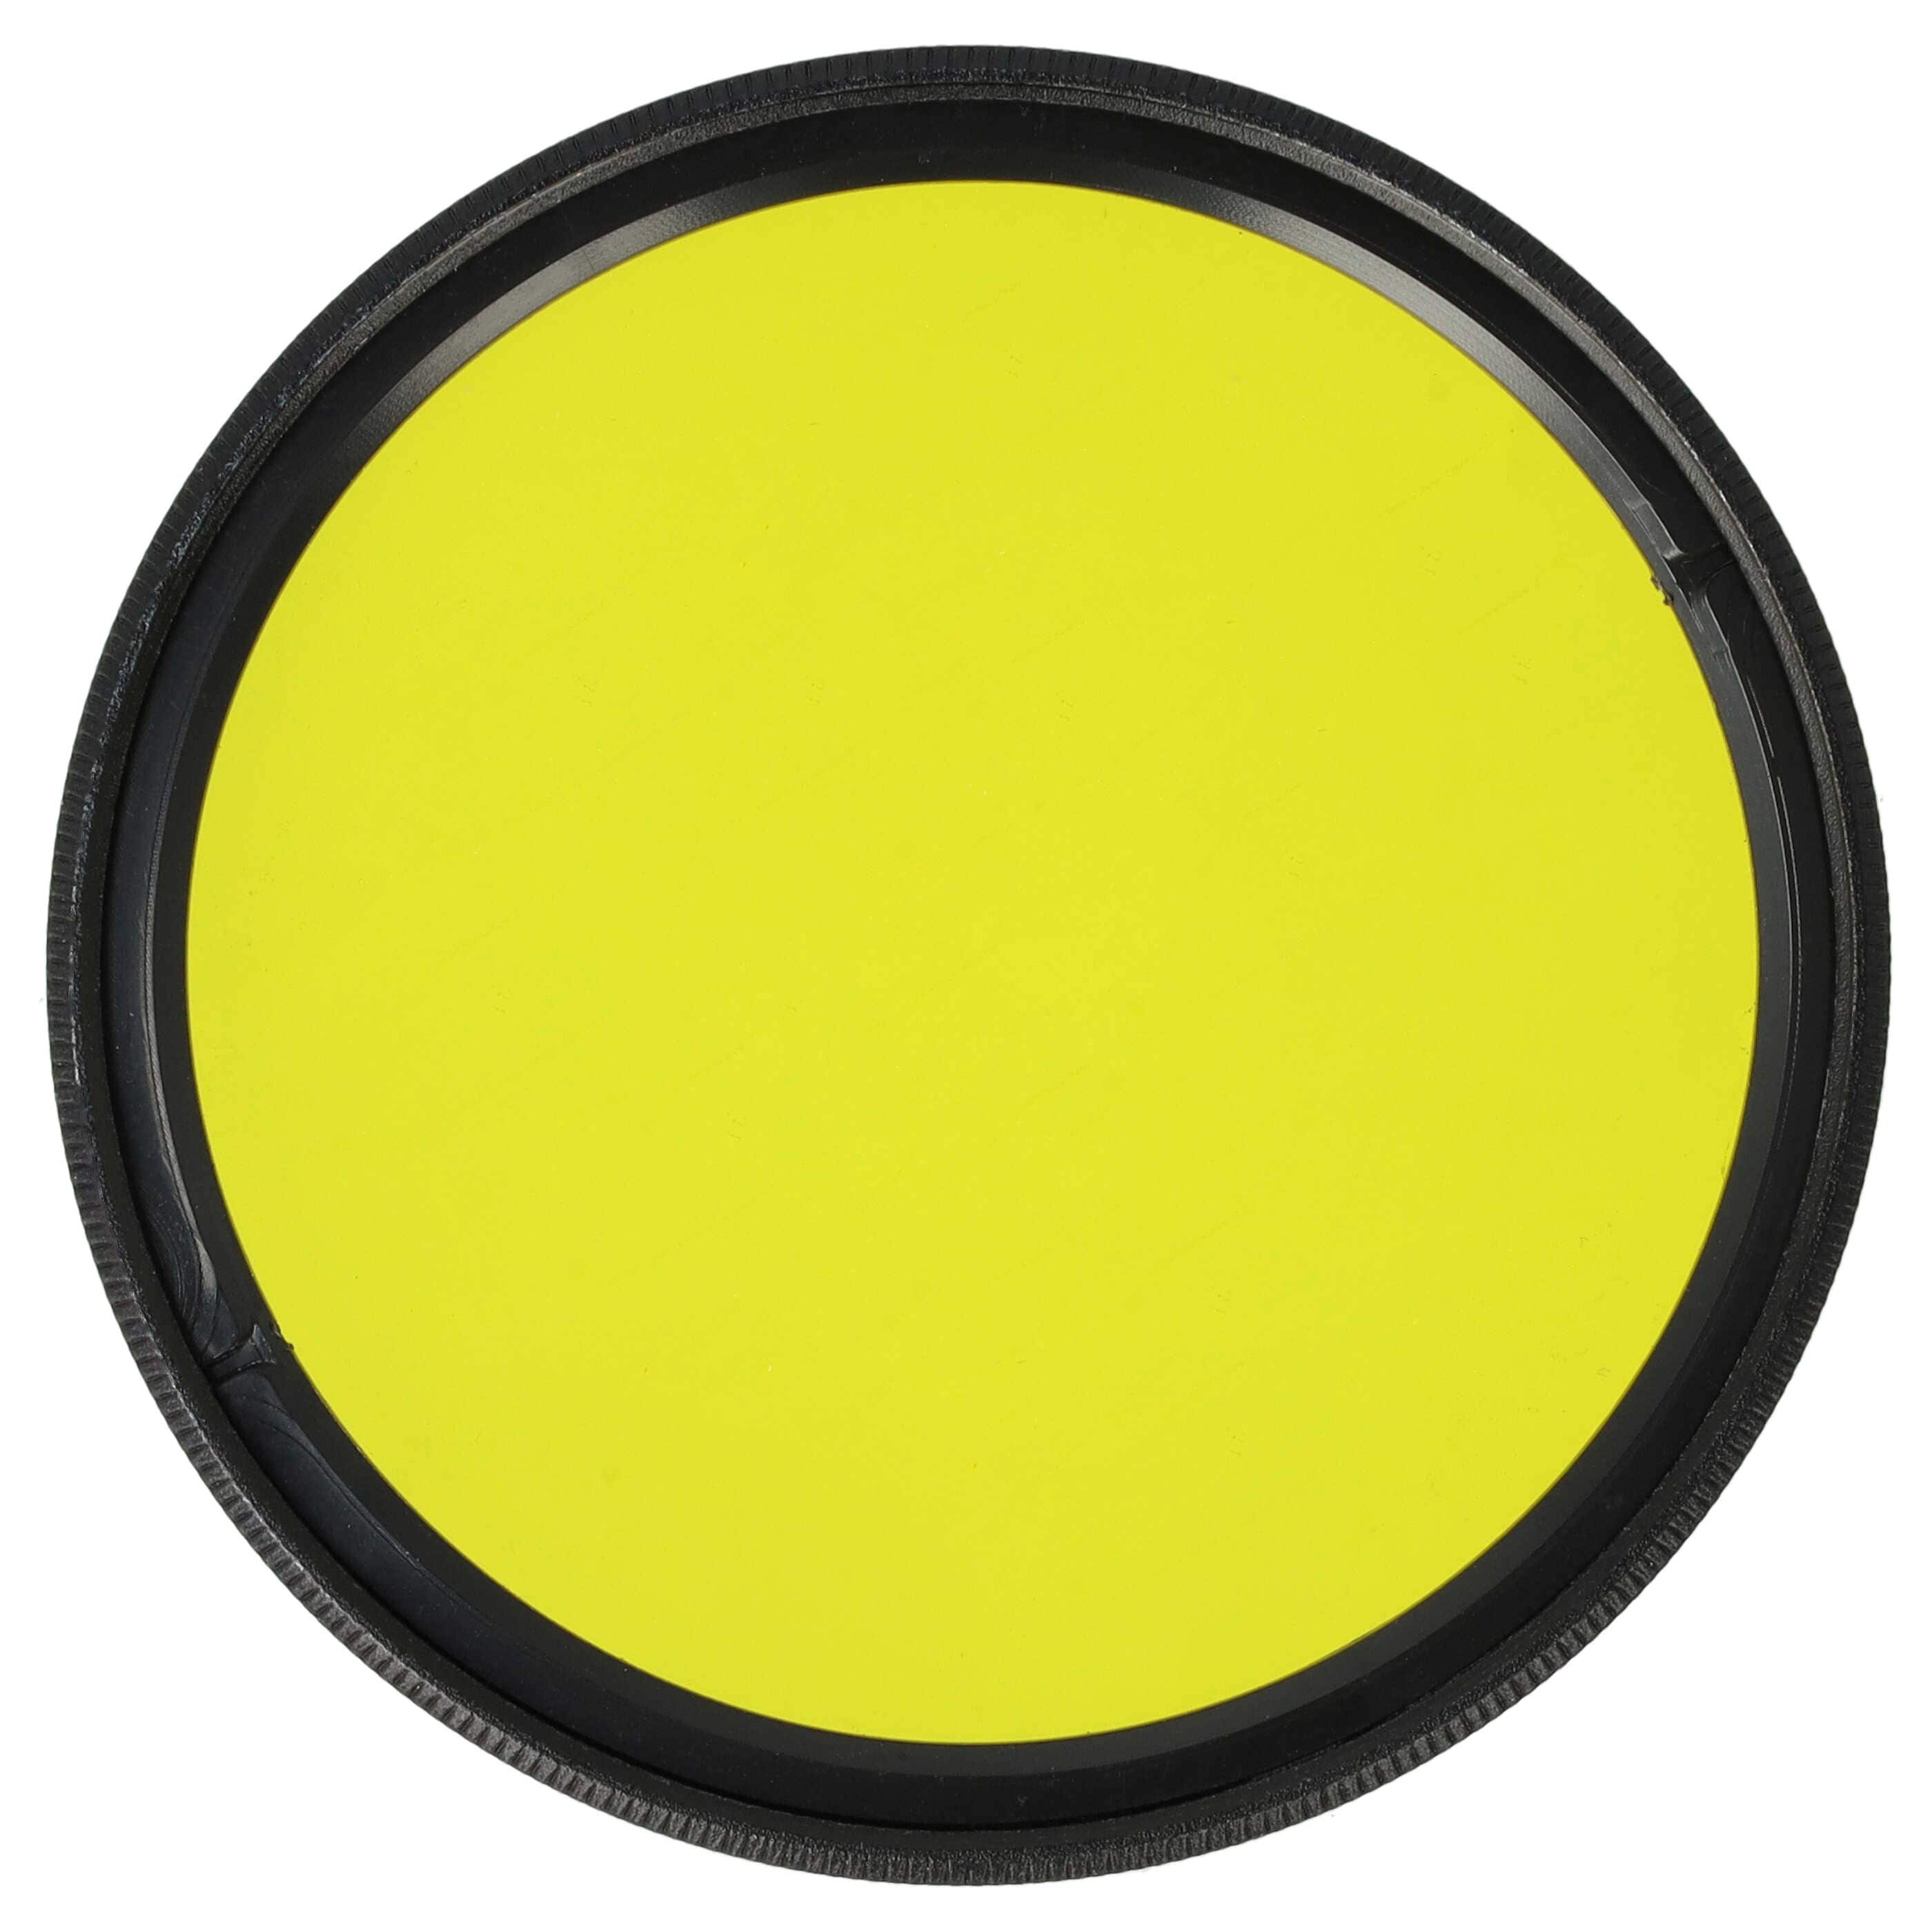 Filtro colorato per obiettivi fotocamera con filettatura da 52 mm - filtro giallo